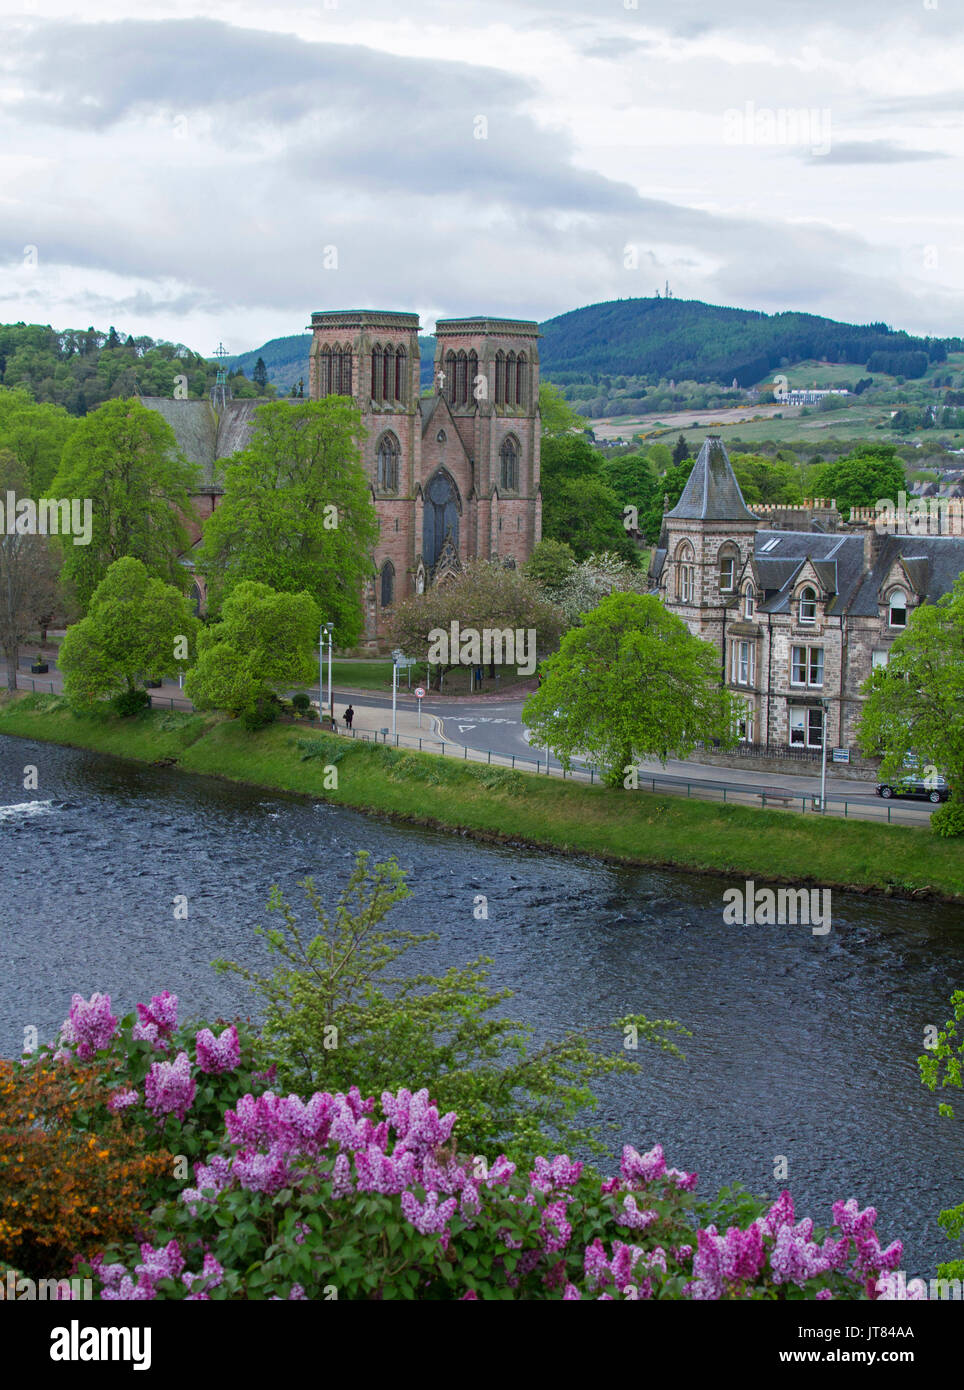 Ciudad de Inverness con edificios históricos, árboles y flores bordeando el río Ness, con montañas en el fondo en Escocia Foto de stock